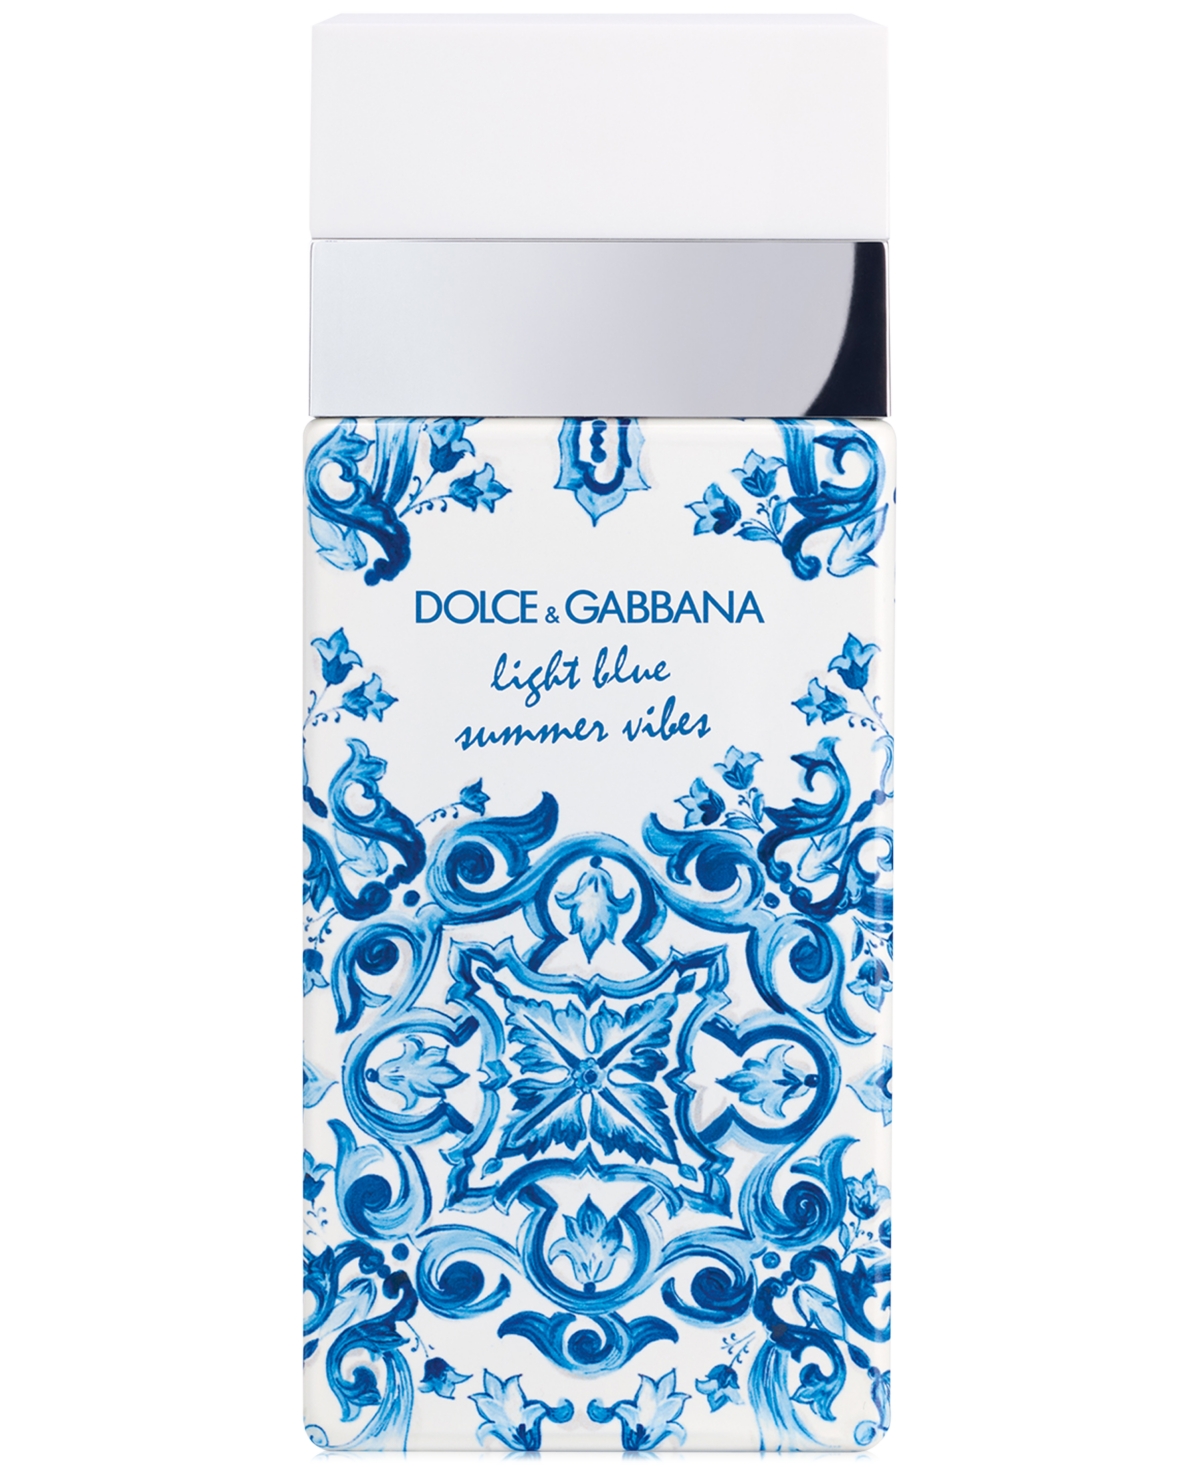 Dolce&Gabbana Light Blue Summer Vibes Eau de Toilette, 3.3 oz.